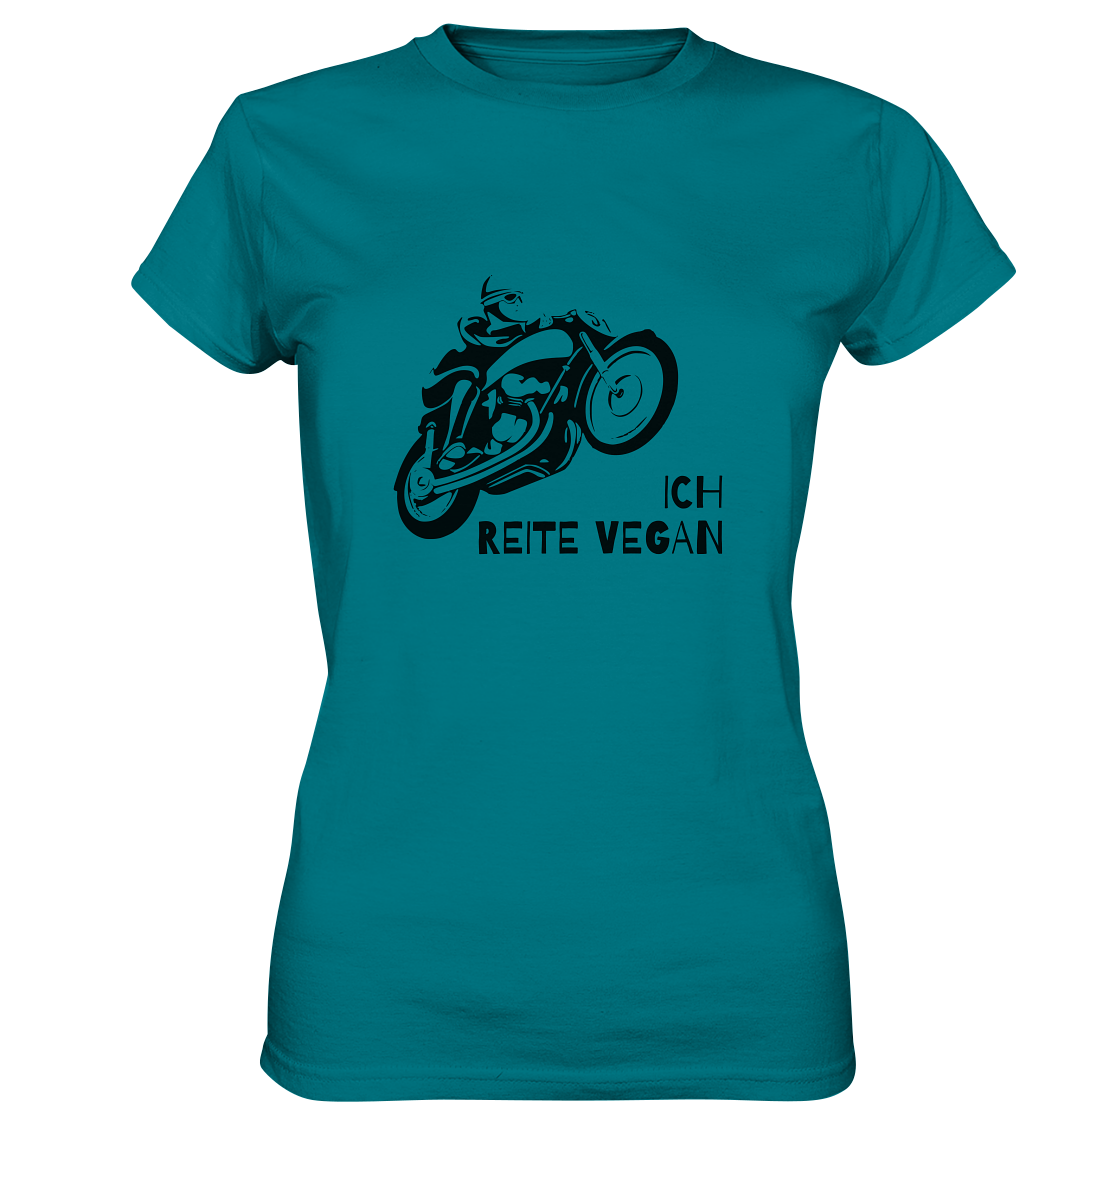 T-Shirt, Damen Rundhals, mit Aufdruck Motorrad und Spruch "Ich reite vegan", türkis